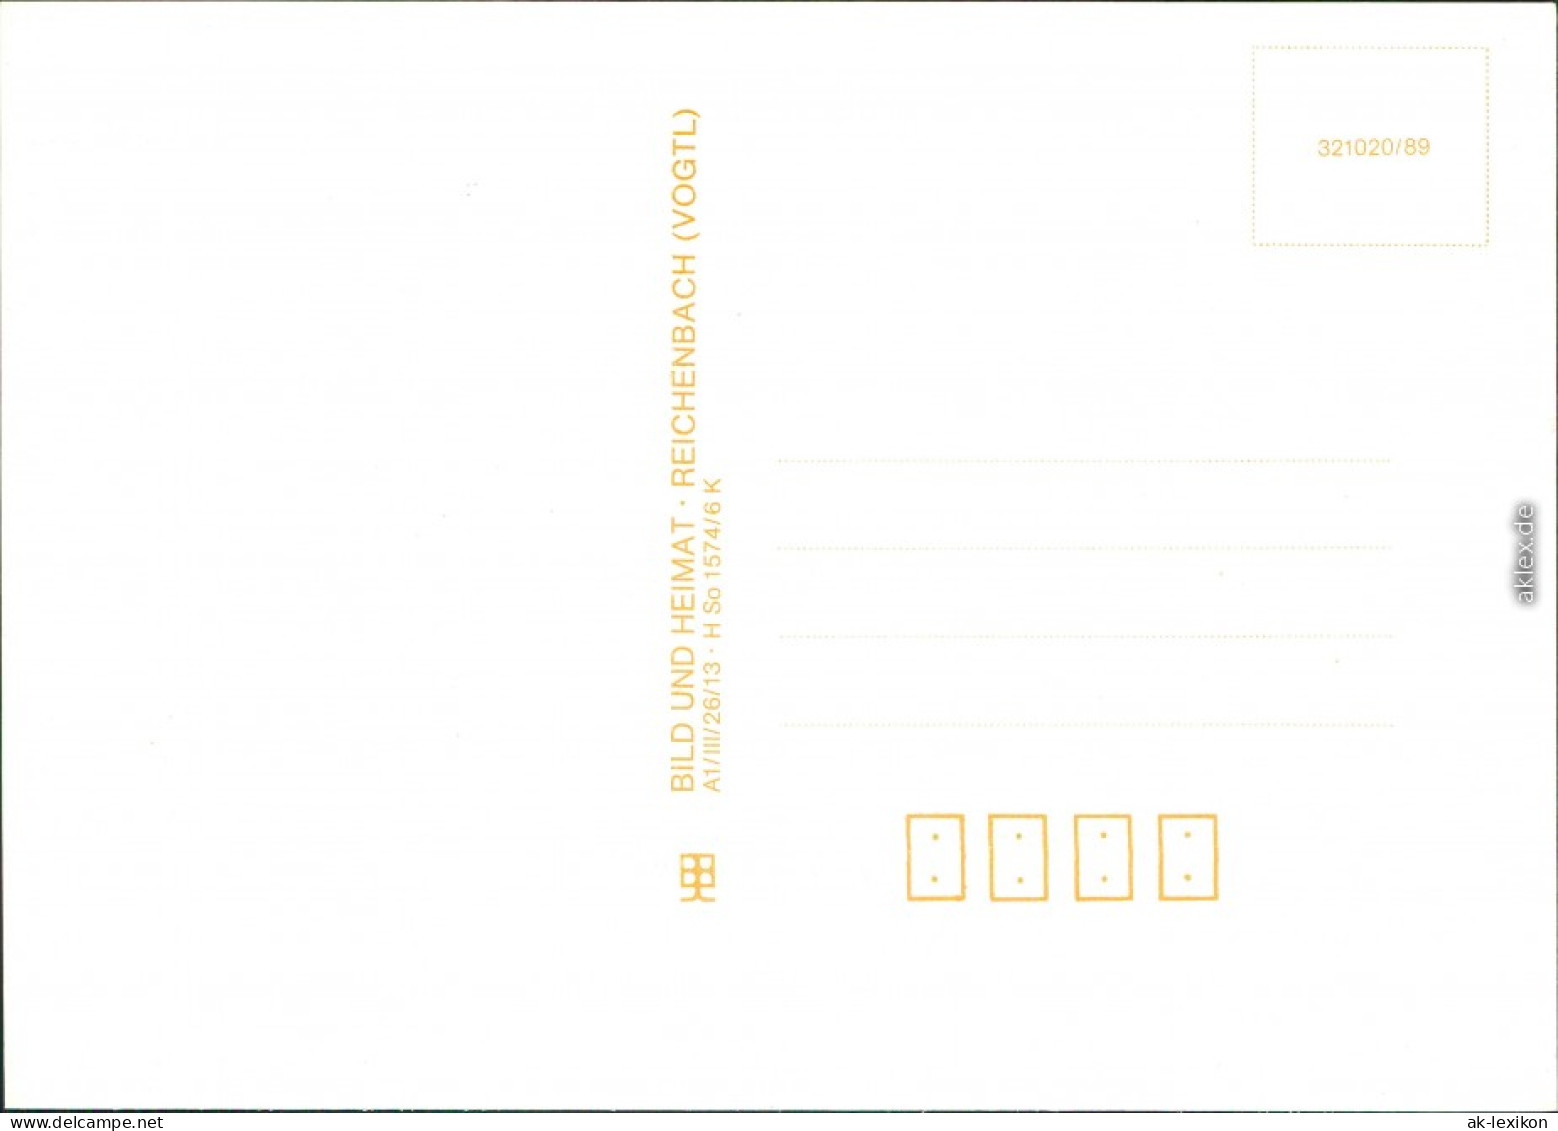 Ansichtskarte  Liedkarten - (unsortiert) - In Der Kammerschenk 1989 - Musik